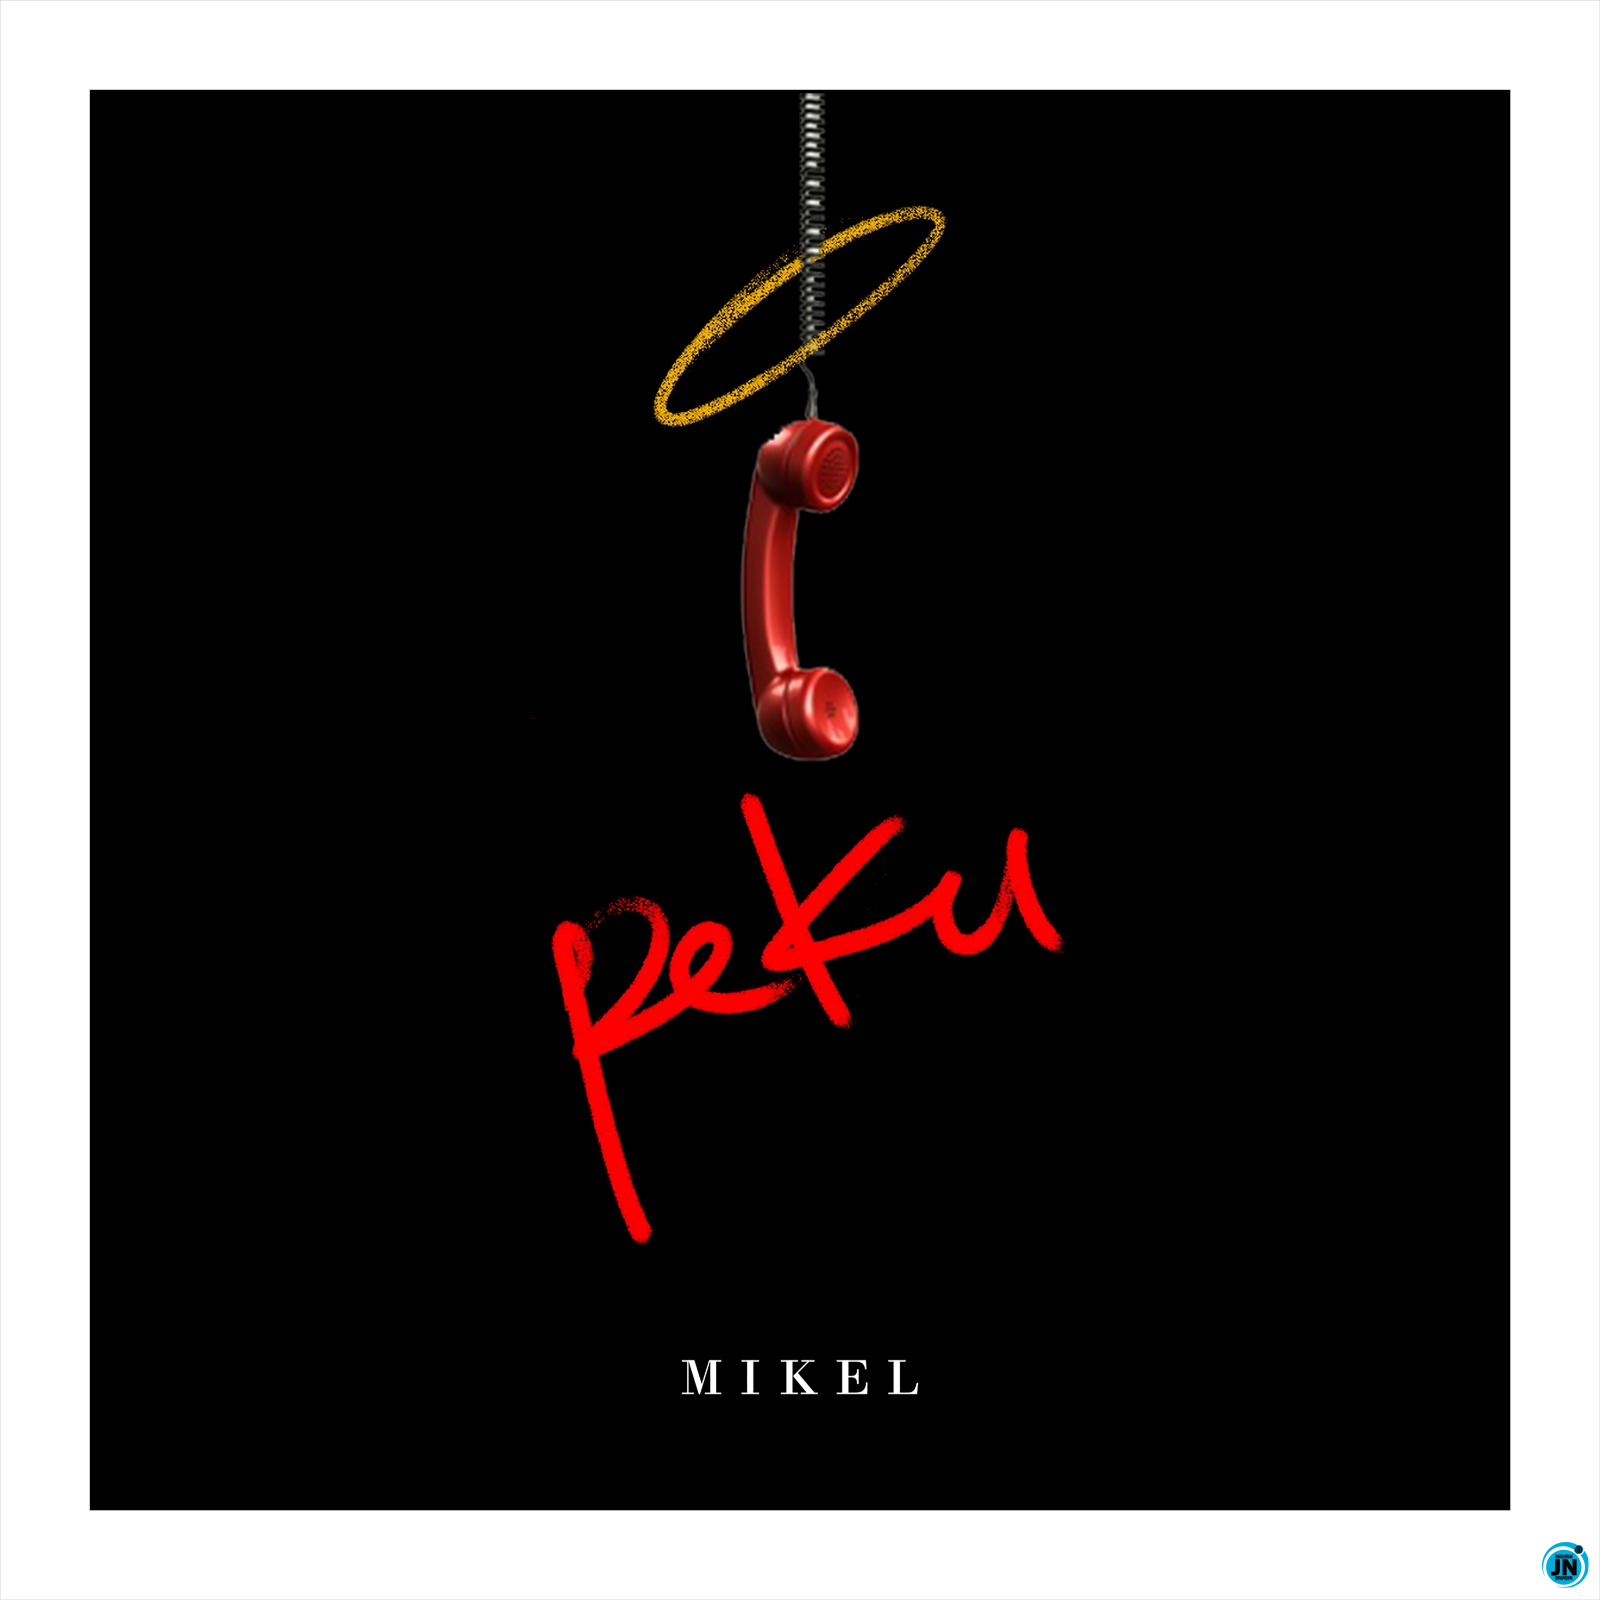 Mikel - Peku   Mp3 Download lyrics